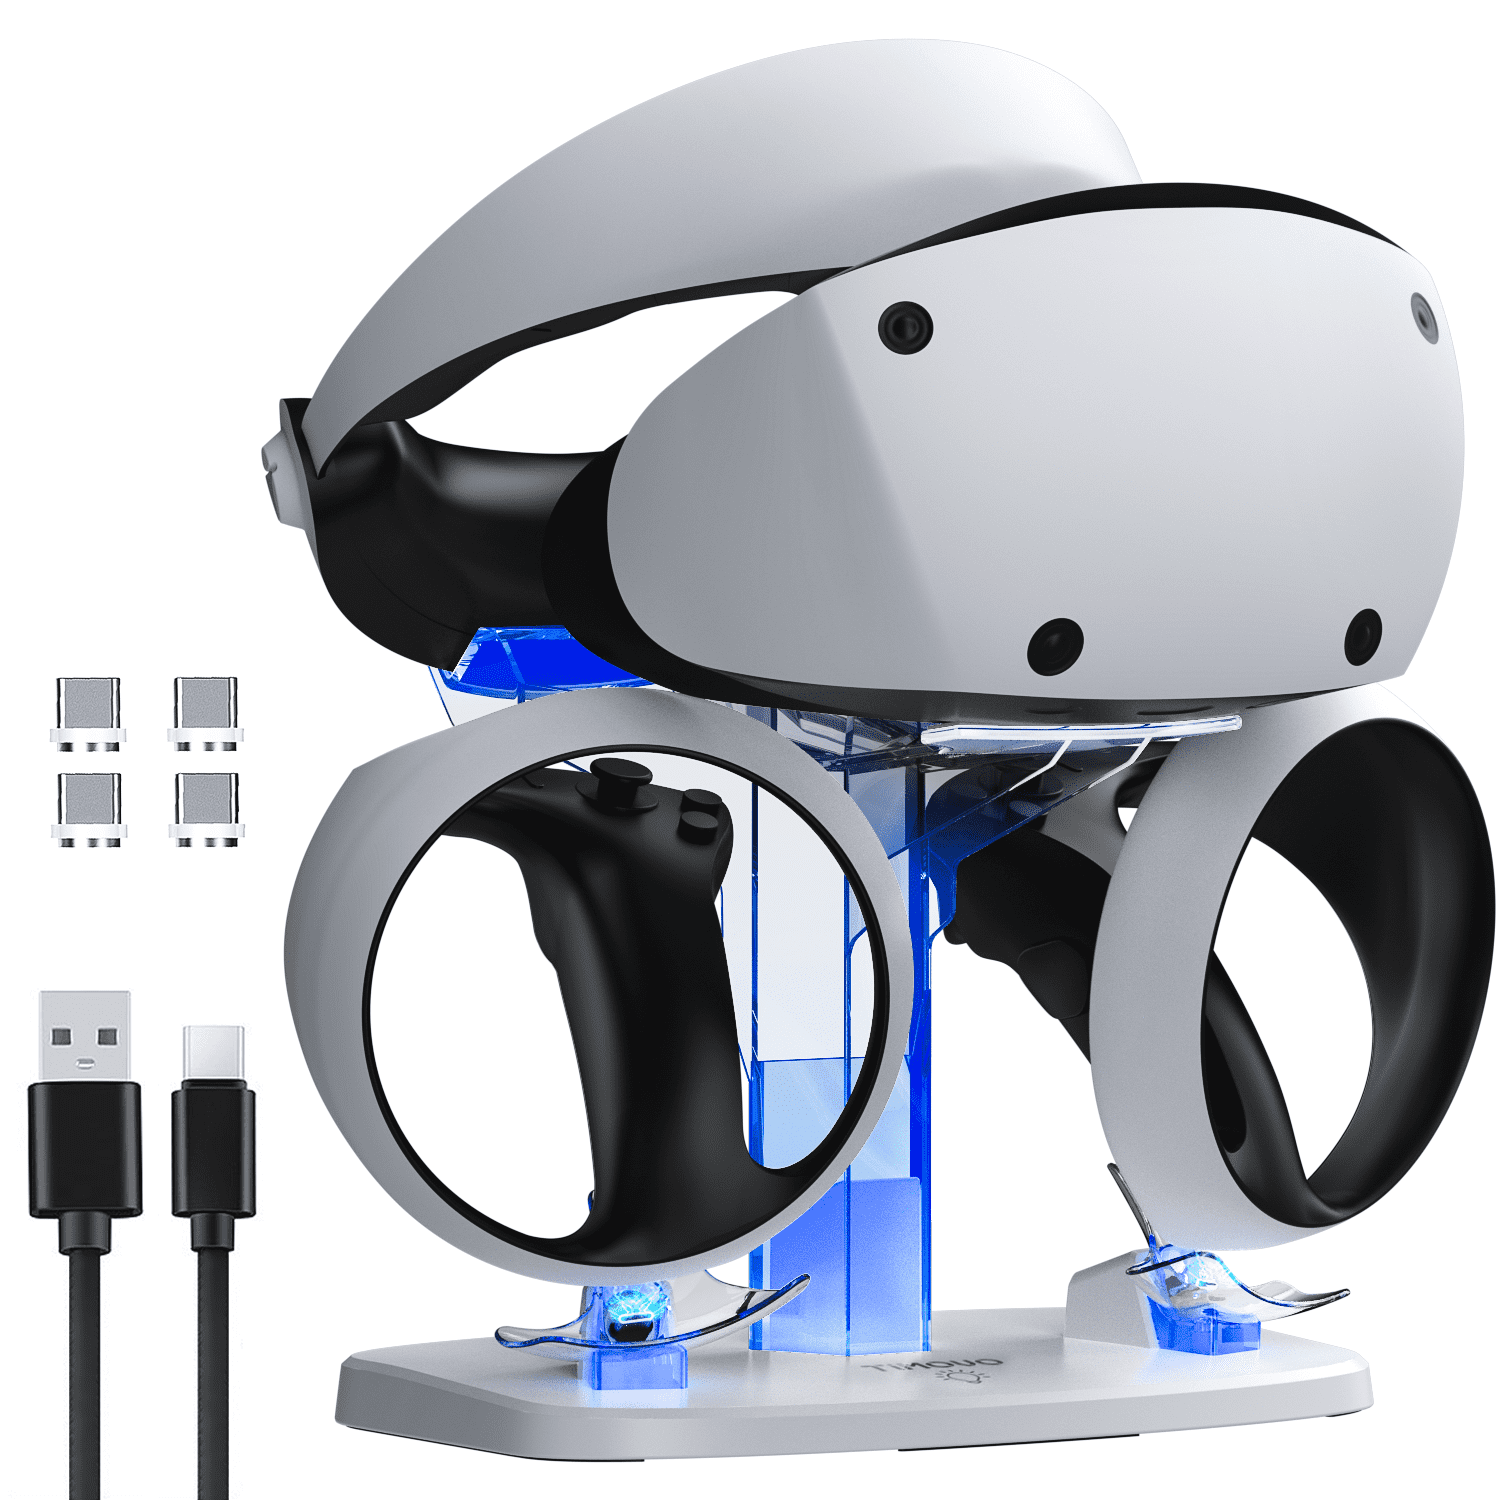 Sony PlayStation VR2 (CFIZVR1WM) Online at Best Price